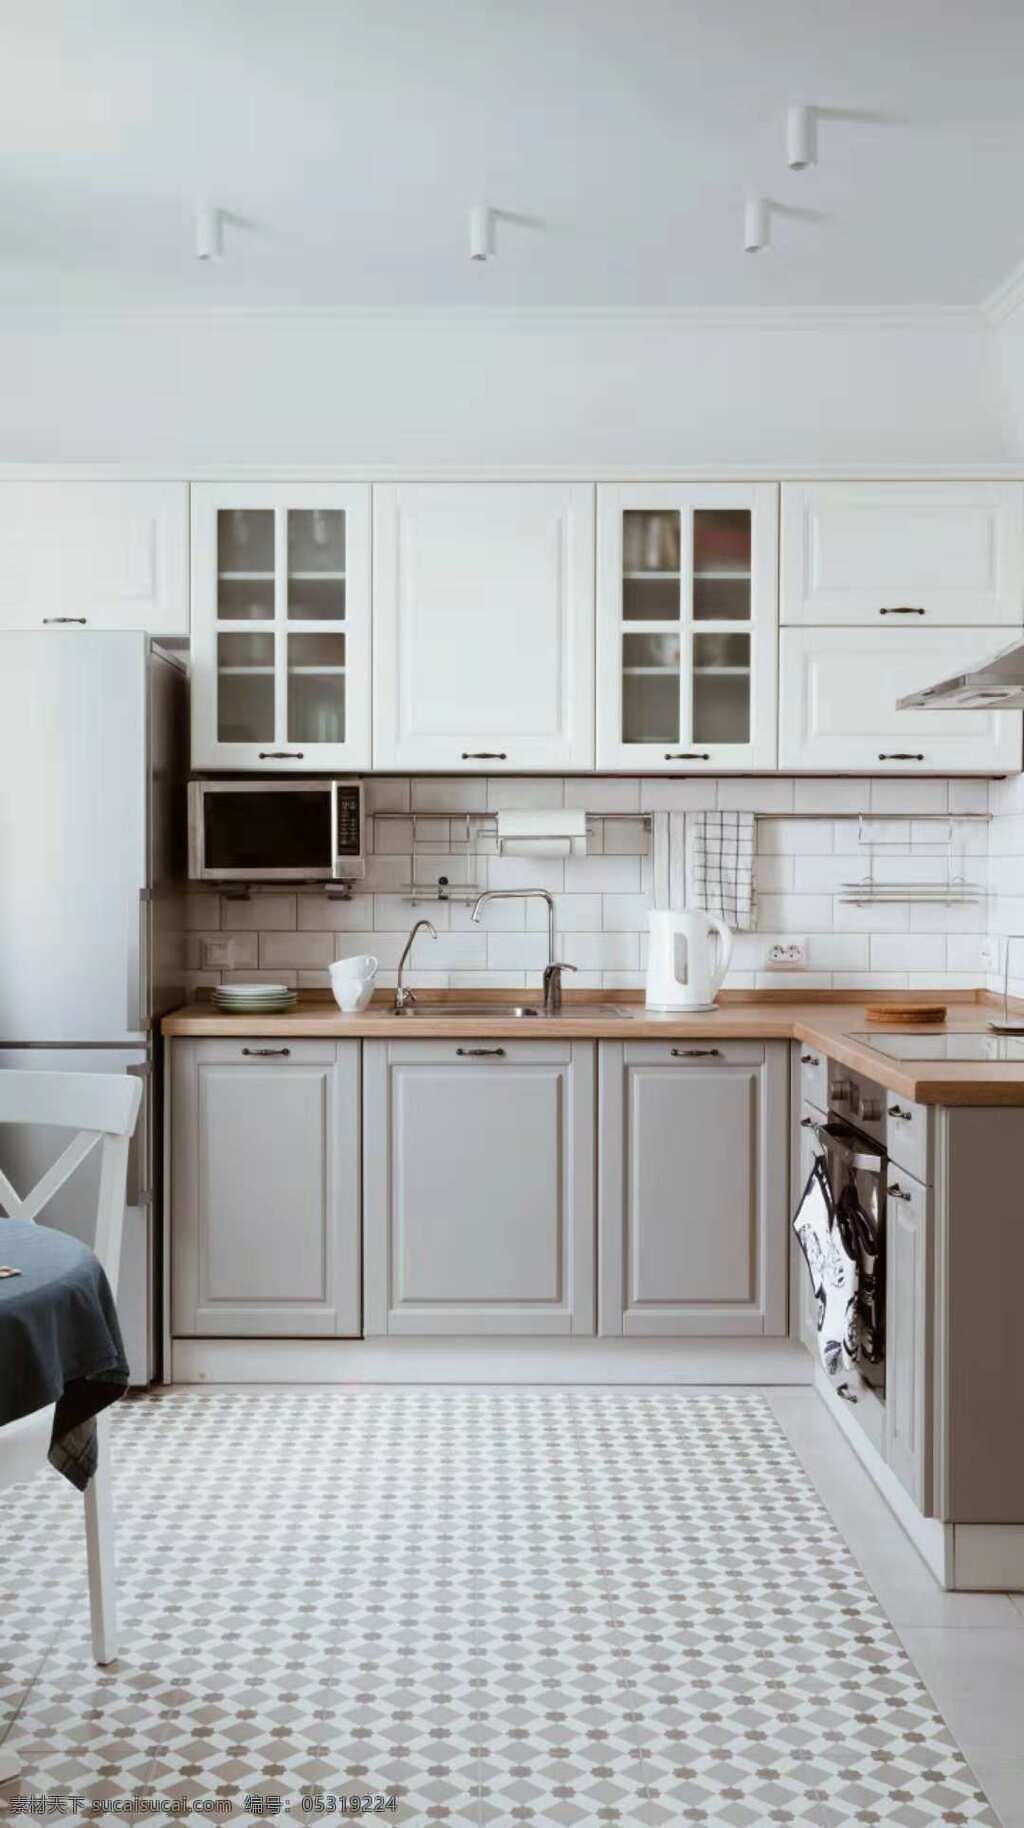 简朴的厨房 整洁的厨房 白色调的厨房 吊柜 简单的厨房 厨房拍摄 生活百科 家居生活